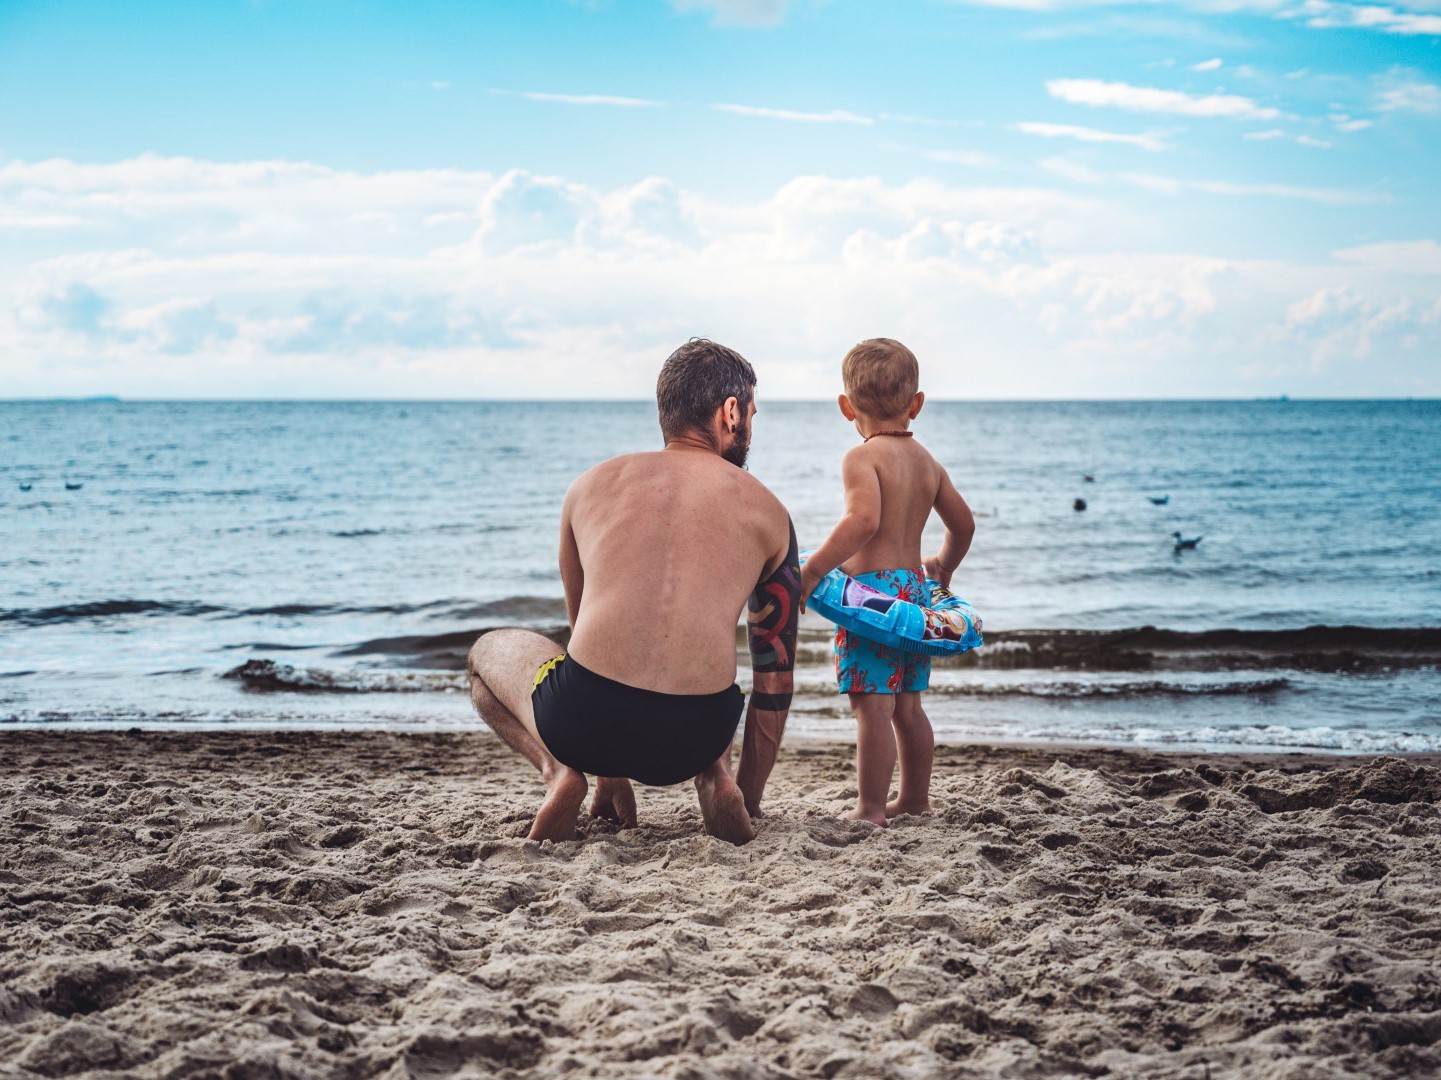 Na imagem observamos um pai e um filho na praia a olhar para o mar.